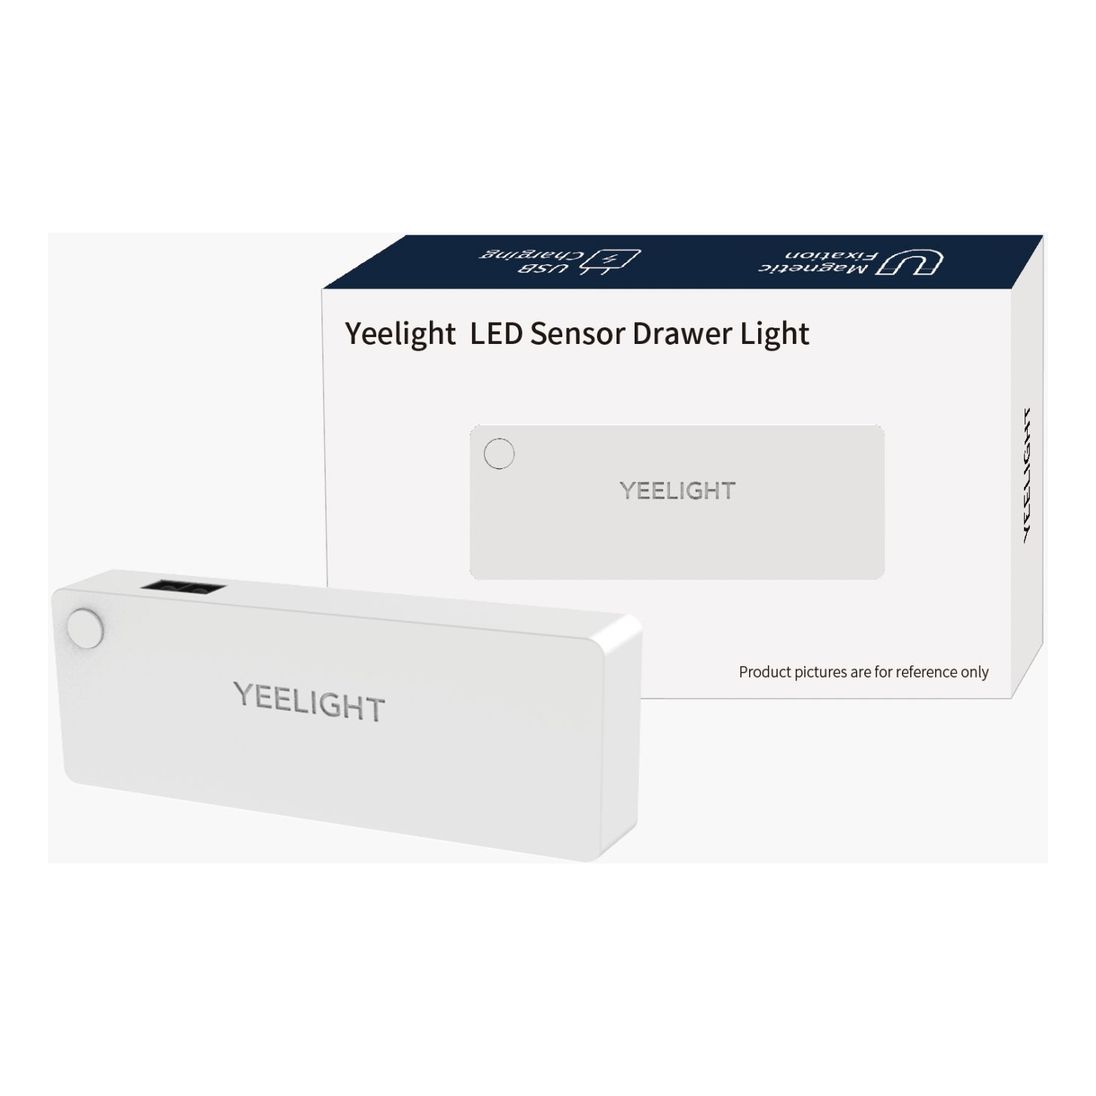 Xiaomi Yeelight Sensor Drawer Light